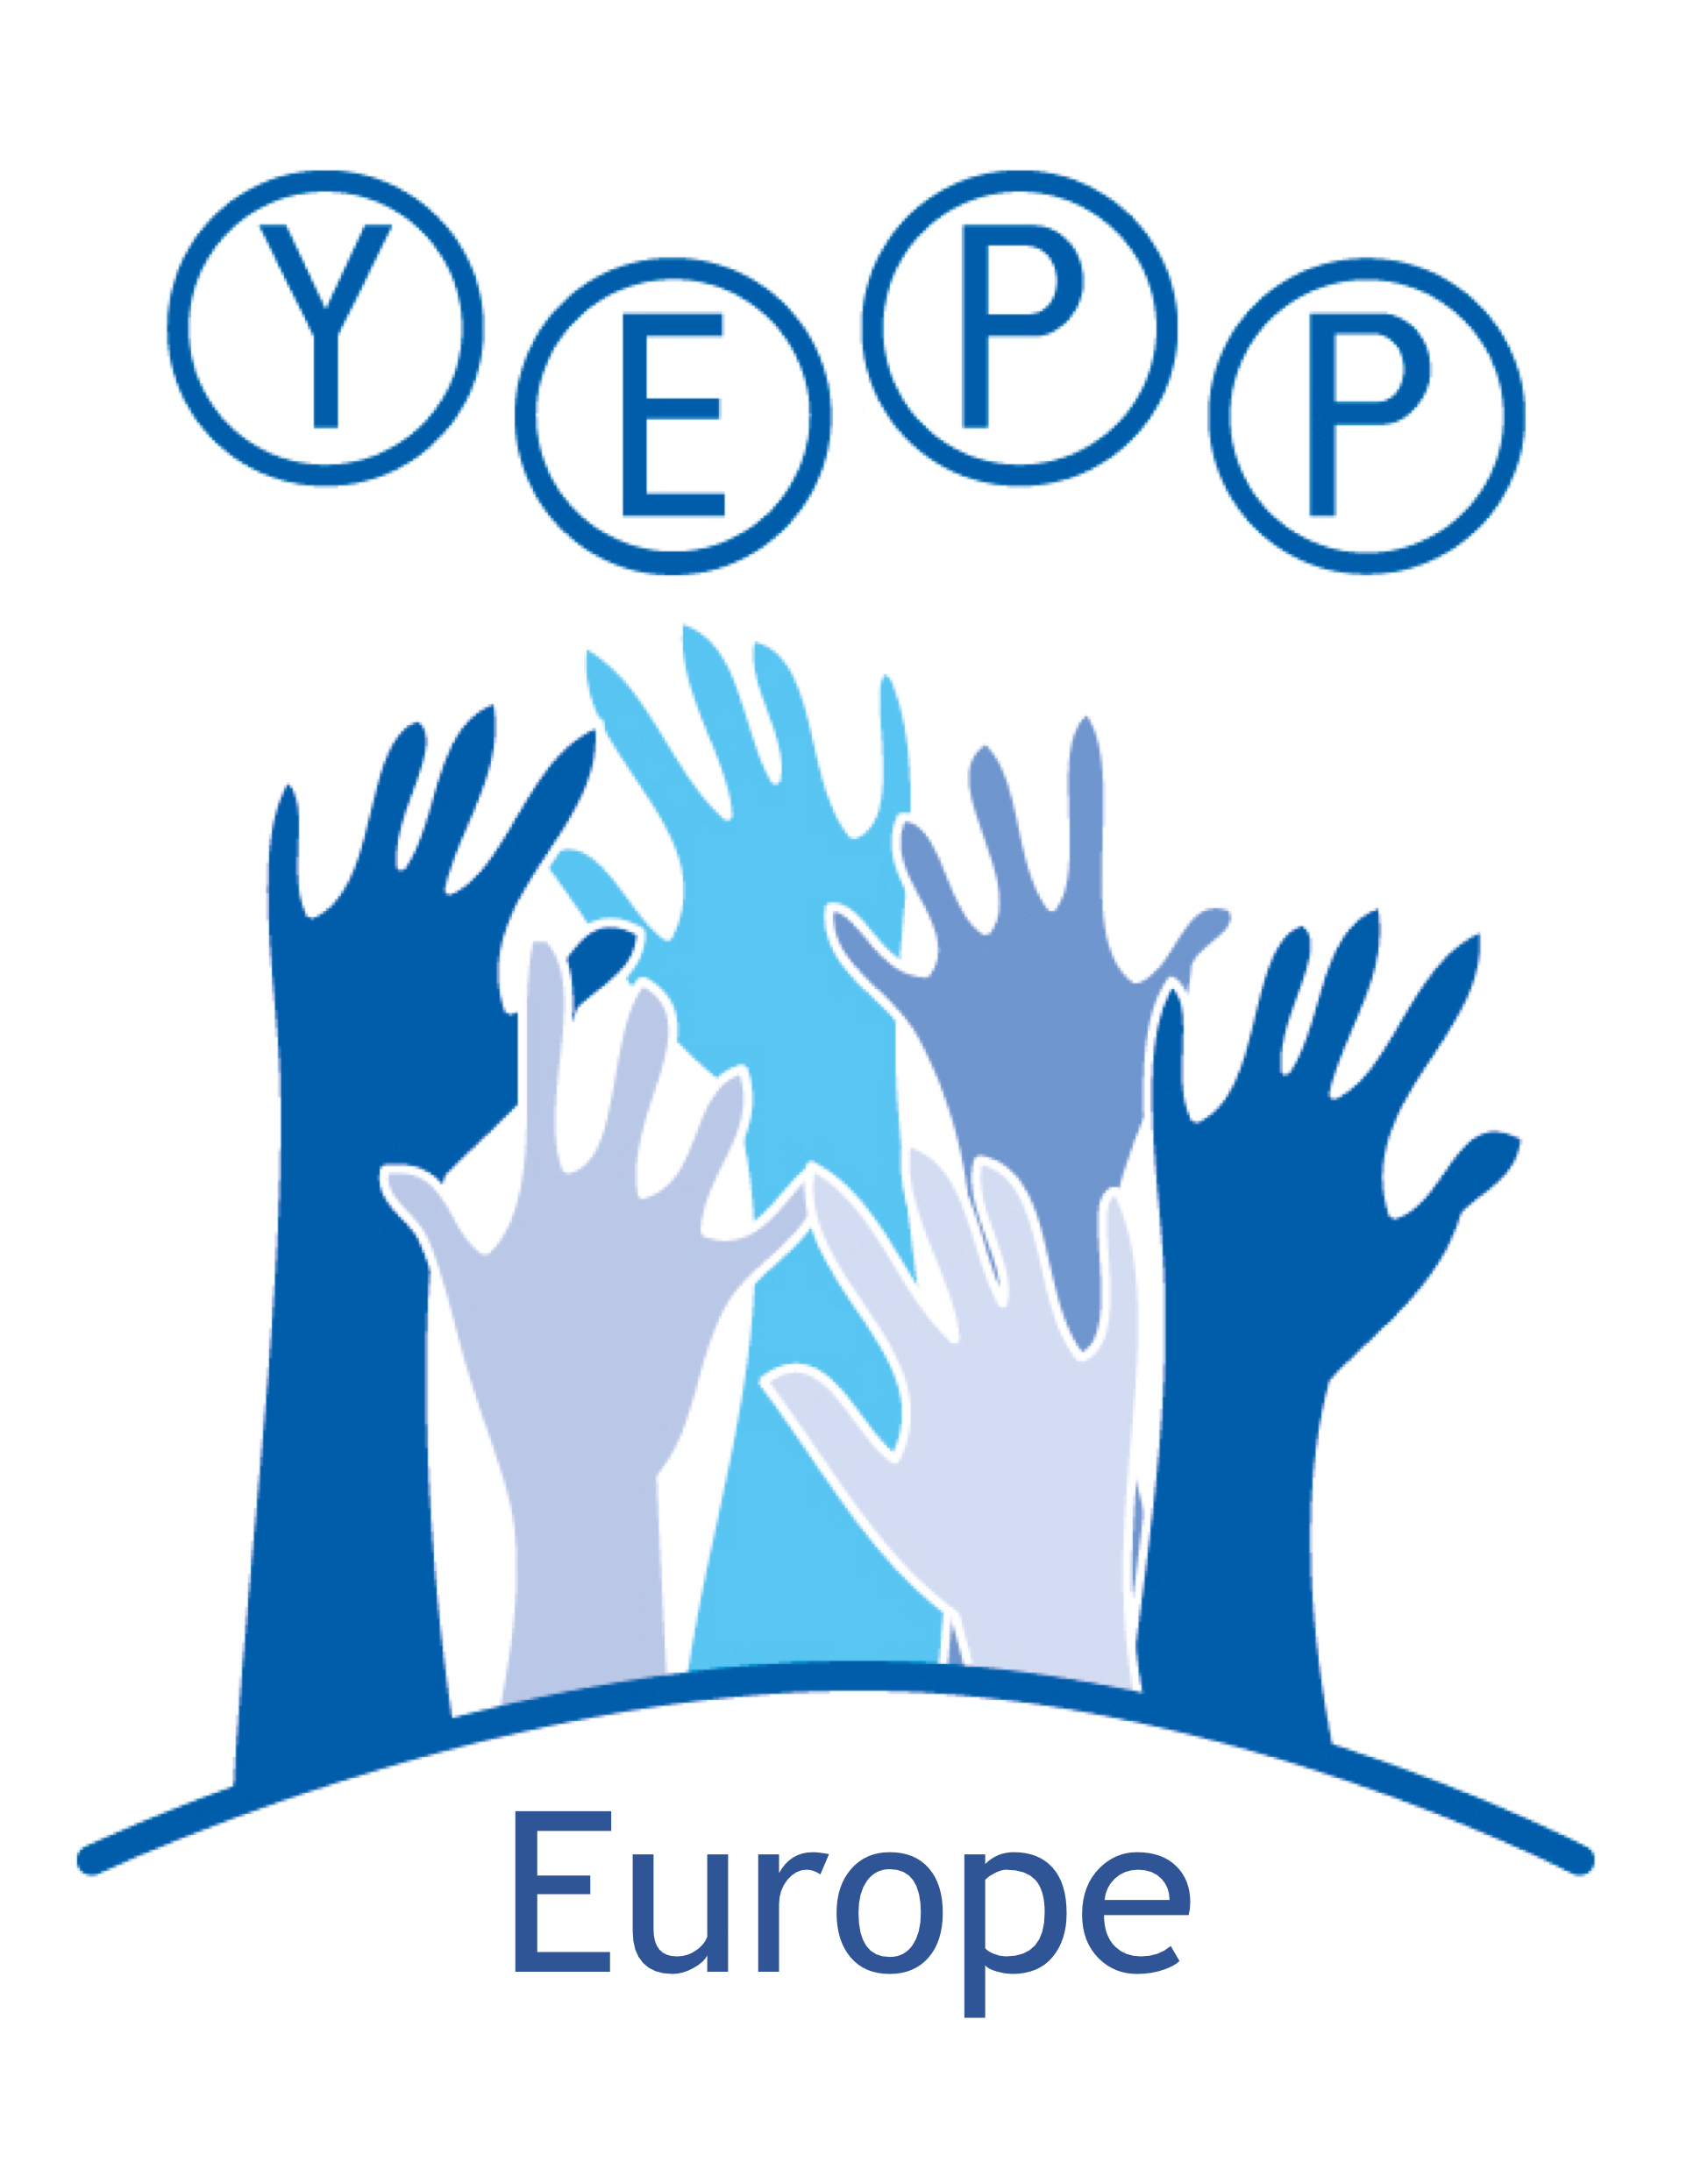 YEPP Europe